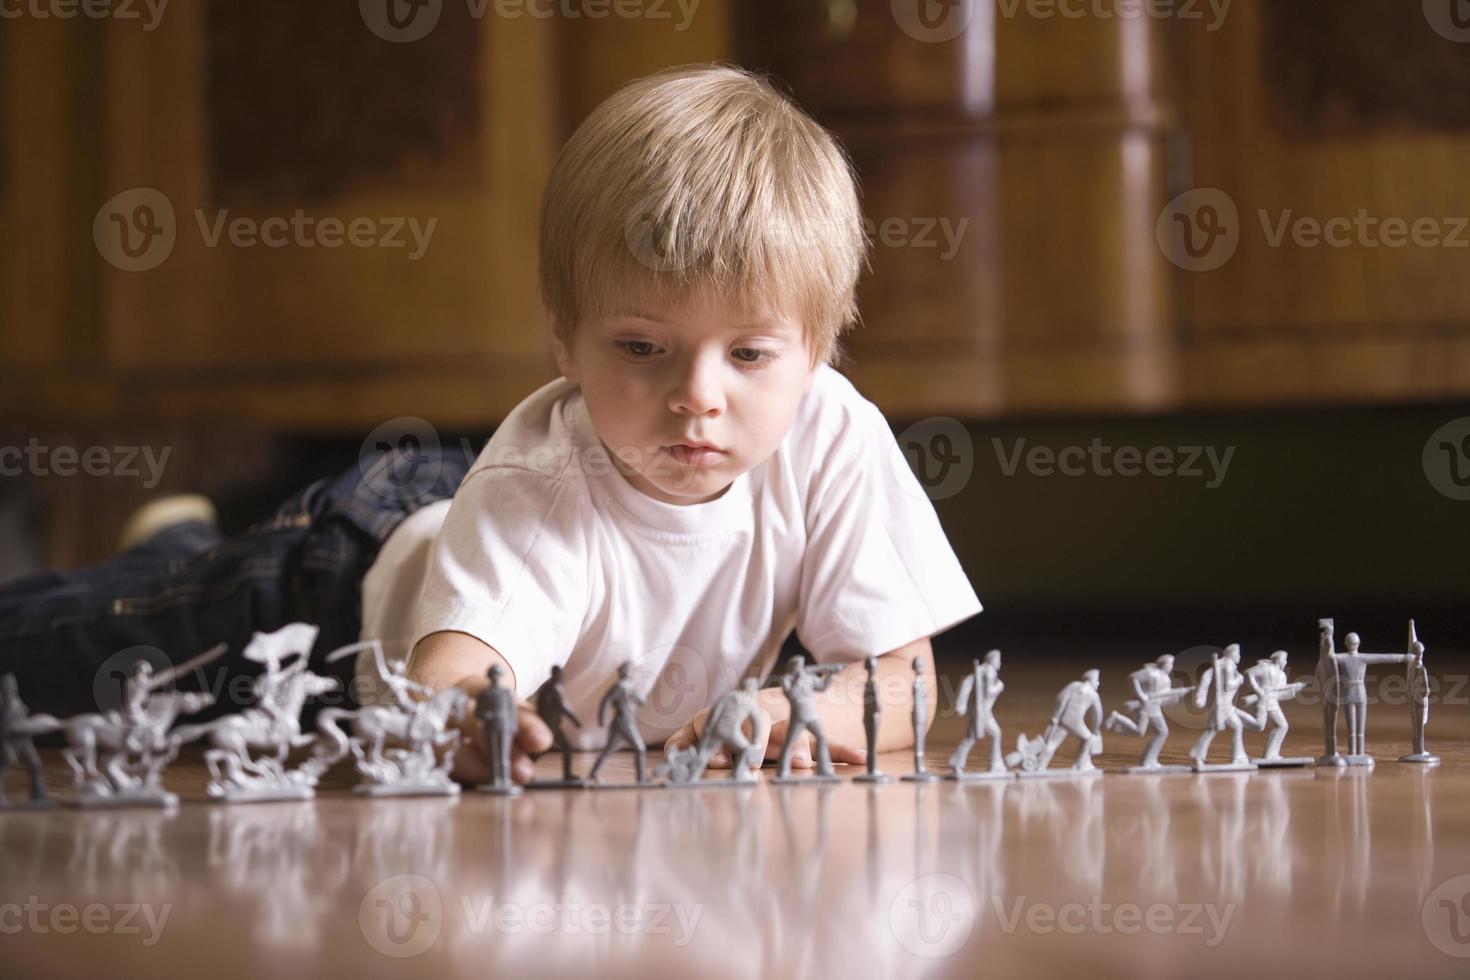 Junge spielt mit Spielzeugsoldaten auf dem Boden foto